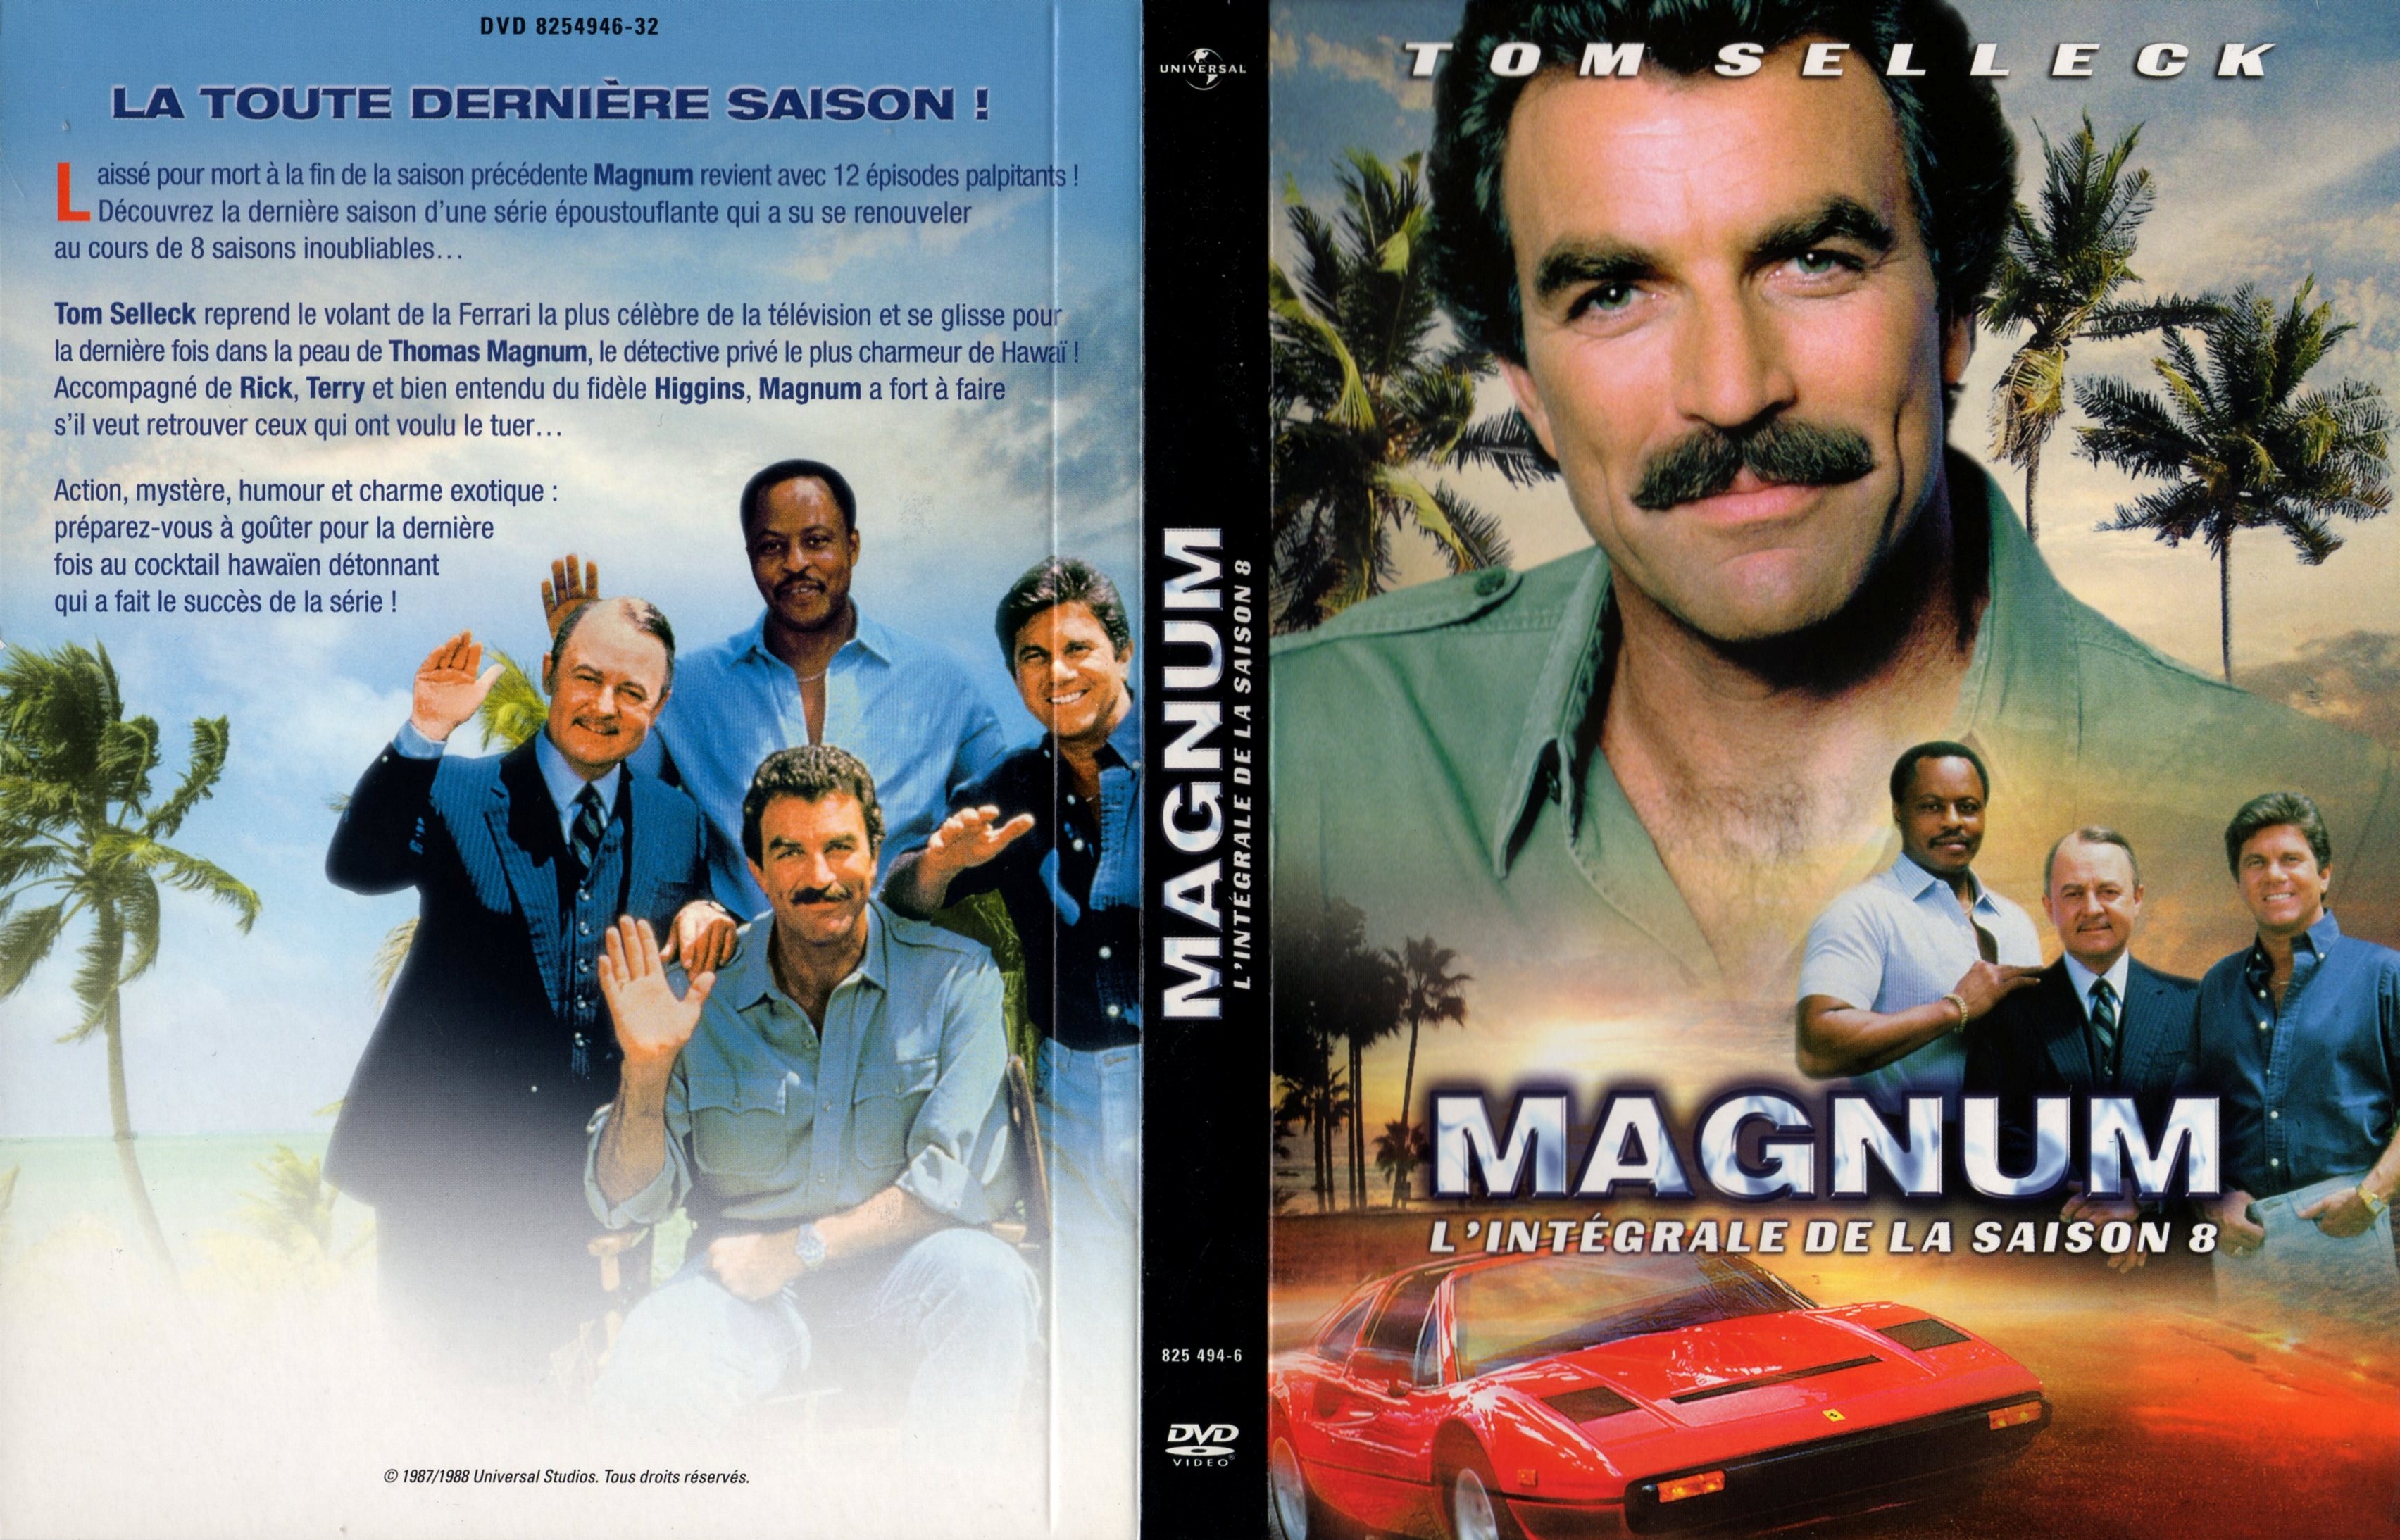 Jaquette DVD Magnum Saison 8 COFFRET